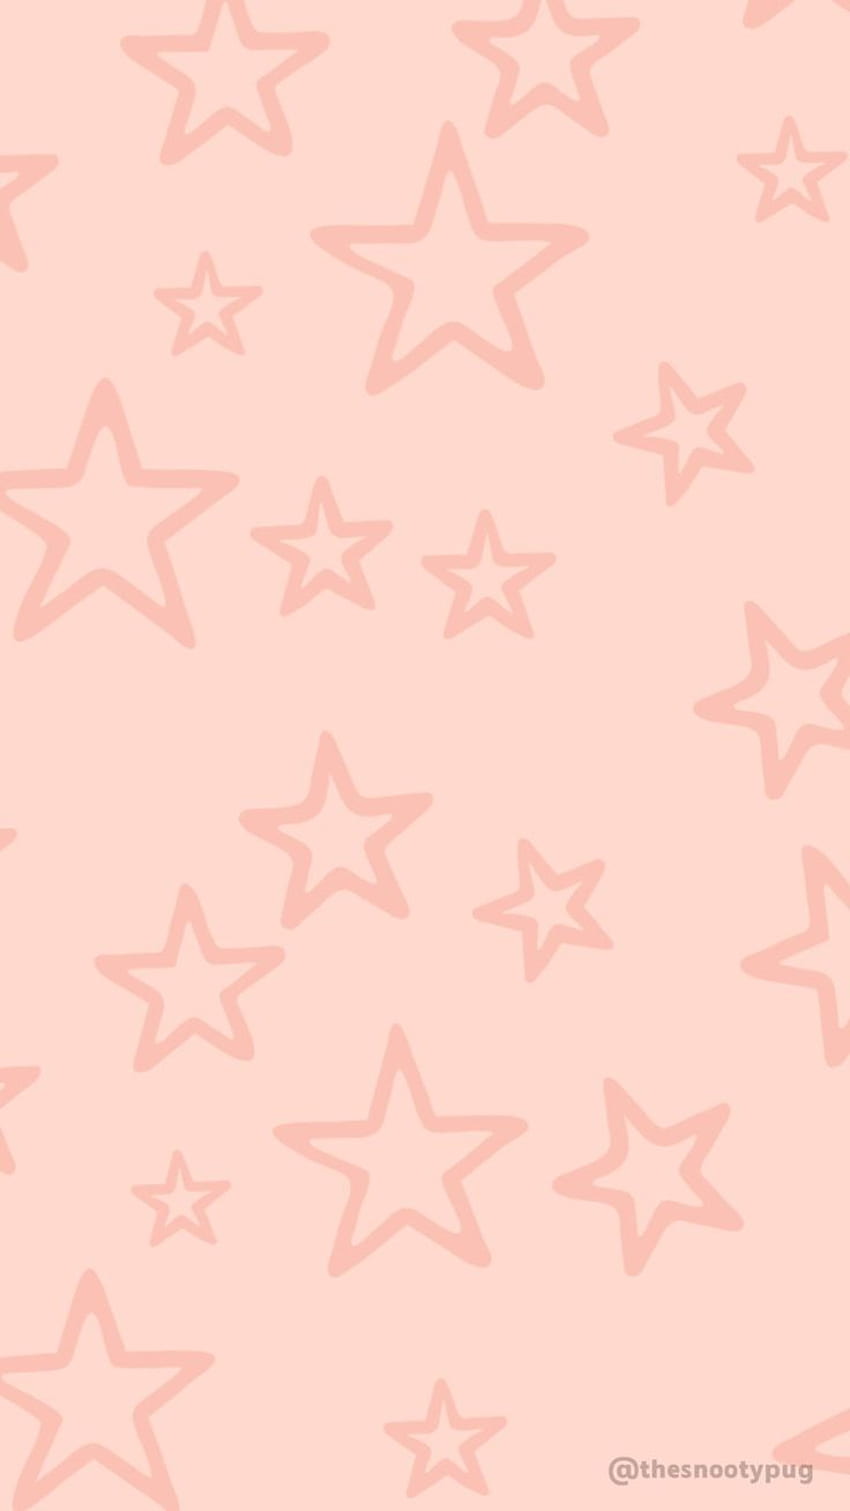 Những ngôi sao màu hồng nổi bật trên nền đen sẽ khiến cho chiếc điện thoại của bạn thật đặc biệt. Hãy để những ngôi sao này ánh sáng trên màn hình điện thoại của bạn.